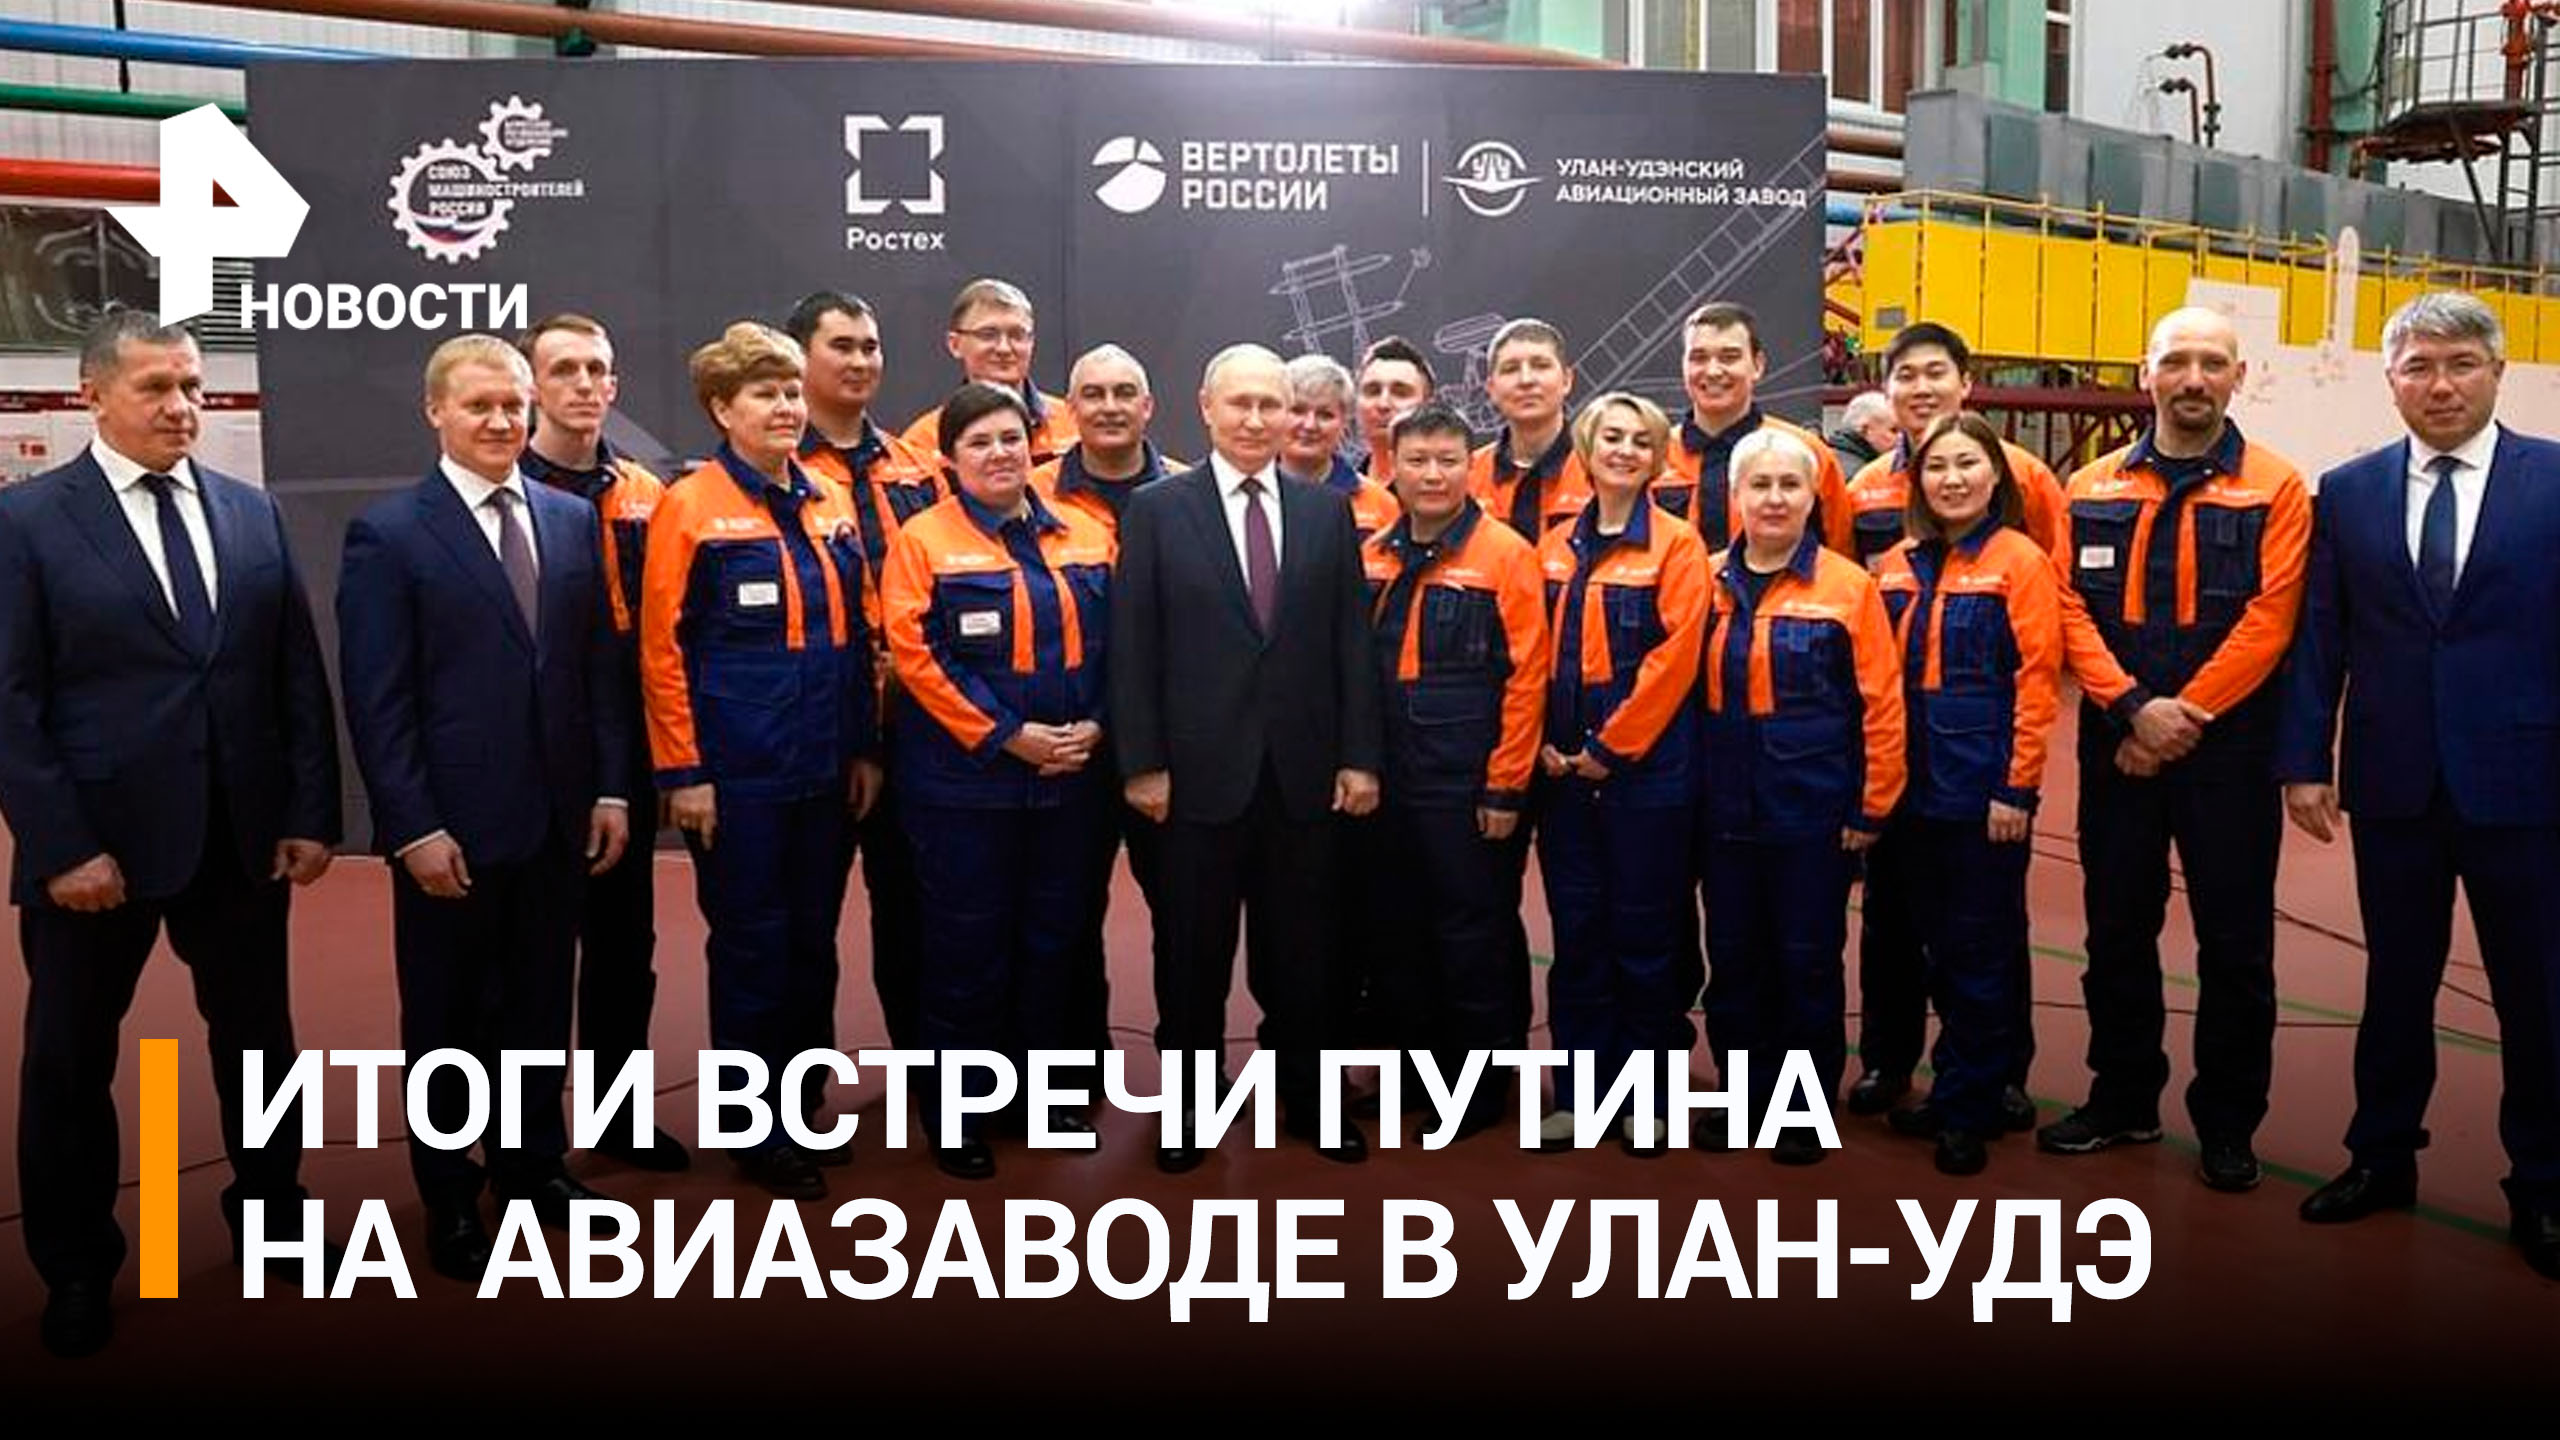 Как прошла встреча Путина с рабочими авиазавода в Улан-Удэ / РЕН Новости